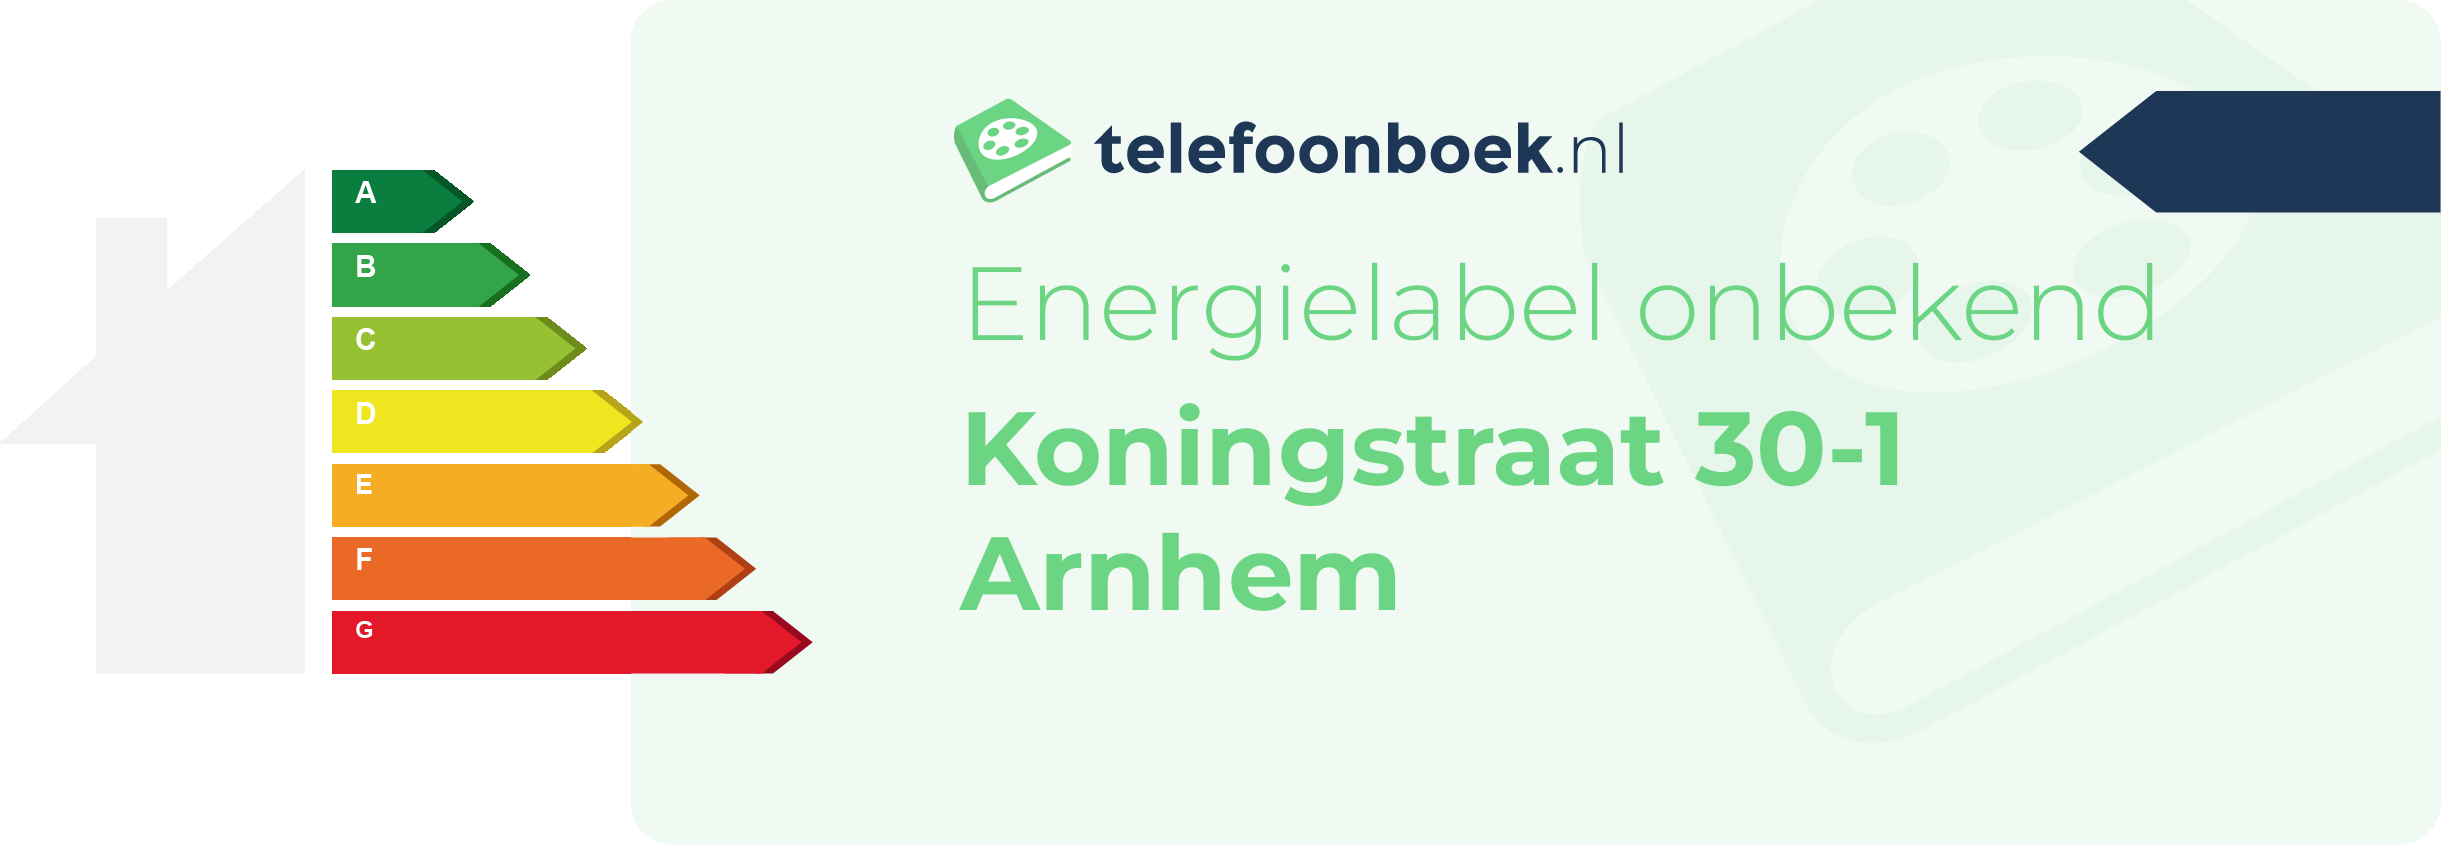 Energielabel Koningstraat 30-1 Arnhem